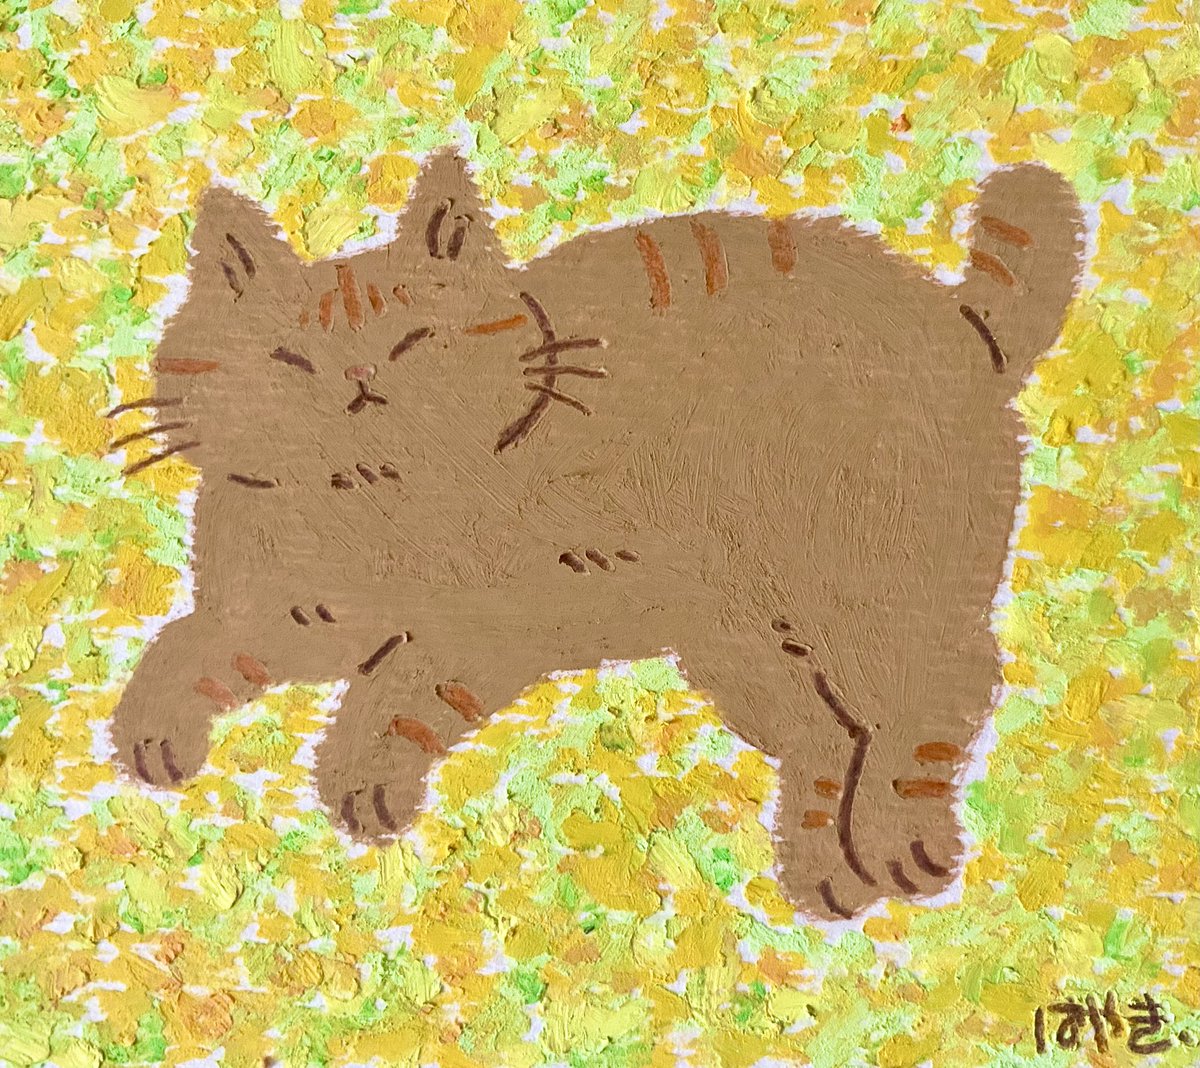 オイルパステルで描いた猫ちゃん🐈

#illusrtation #アナログイラスト #猫